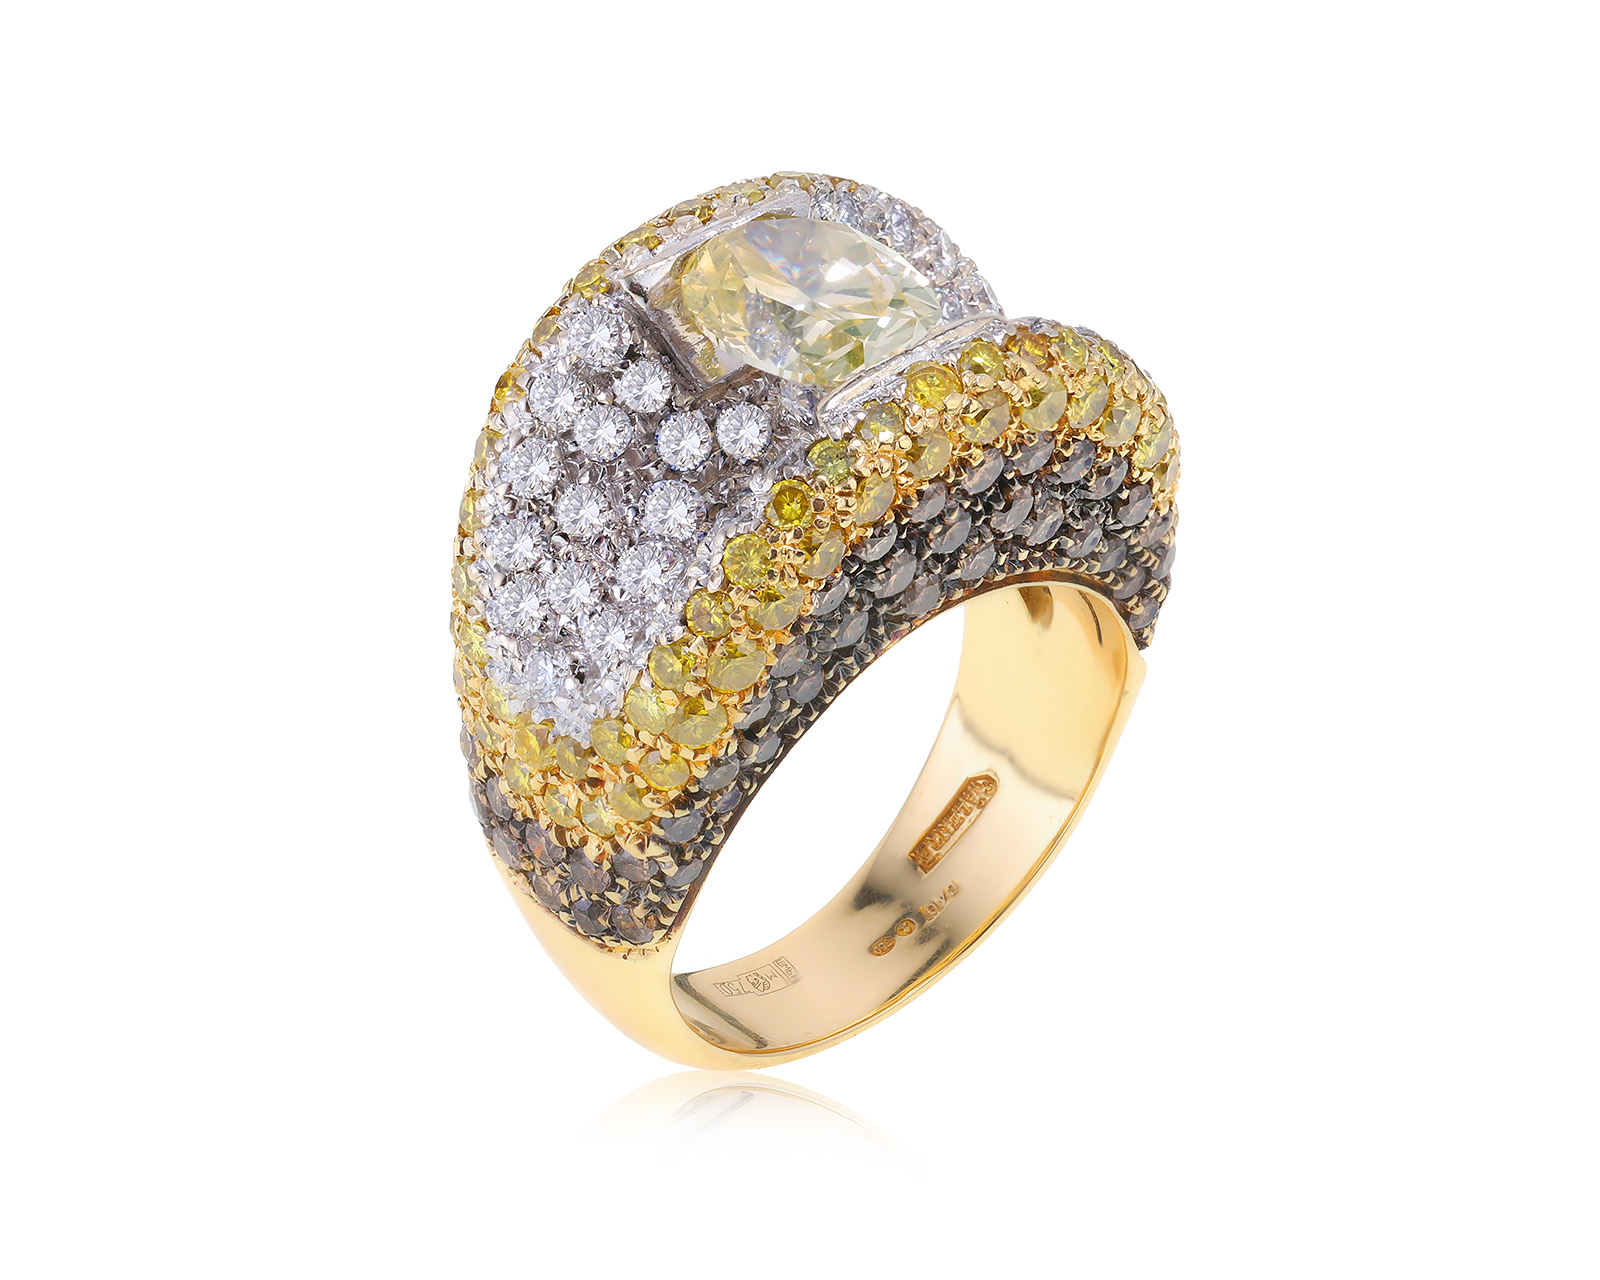 Оригинальное золотое кольцо с бриллиантами 4.64ct Valente 111122/7